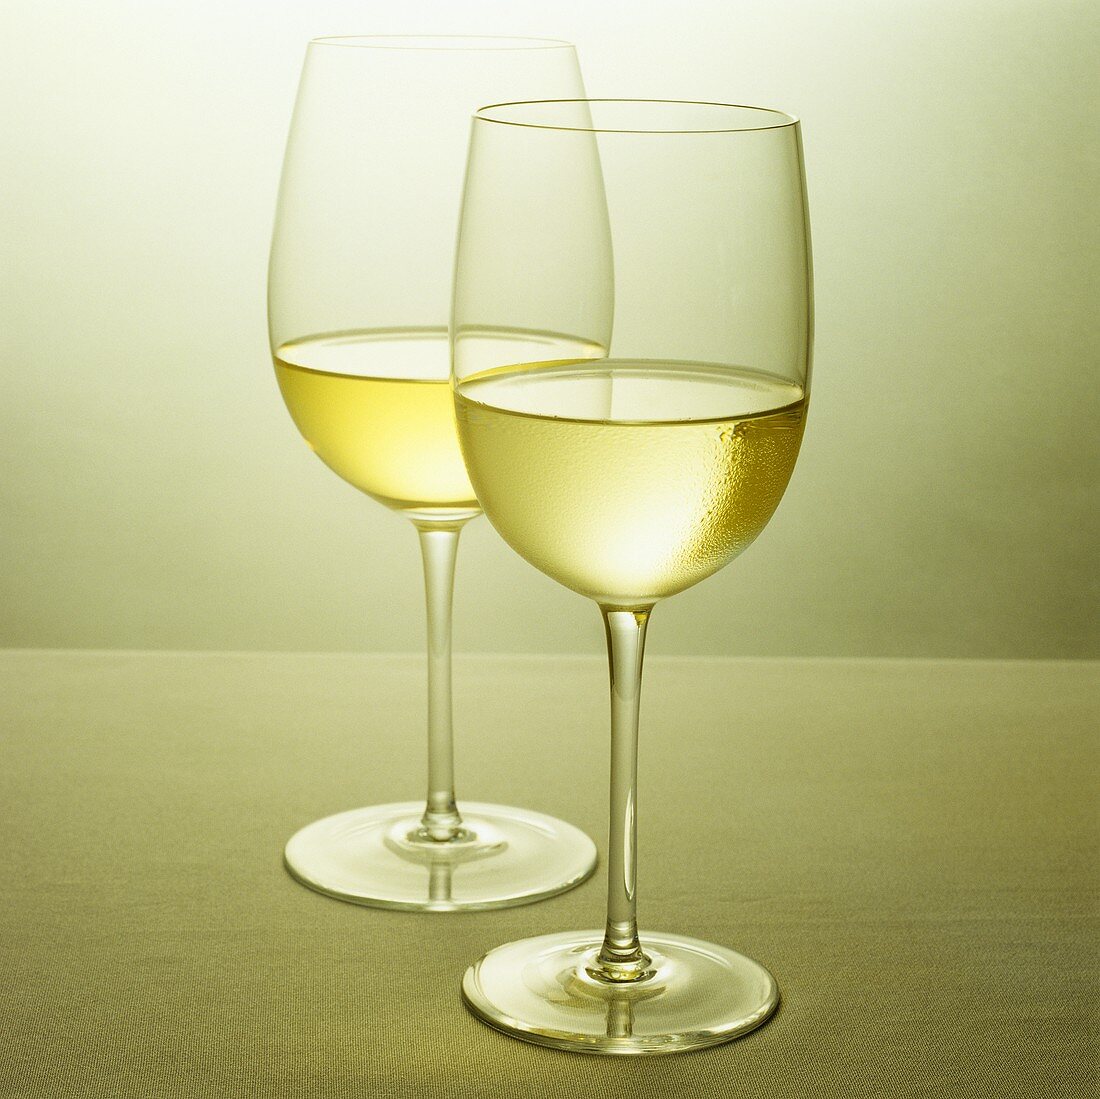 Zwei Gläser Weißwein (Chardonnay)